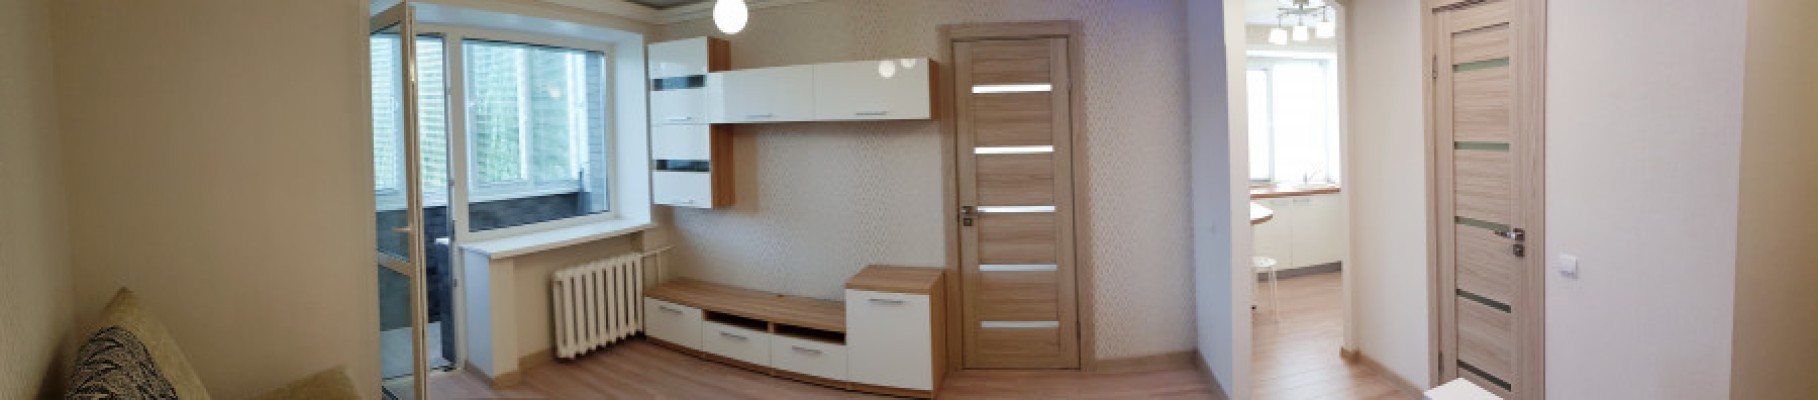 Аренда 2-комнатной квартиры в г. Бобруйске Советская ул. 138, фото 3